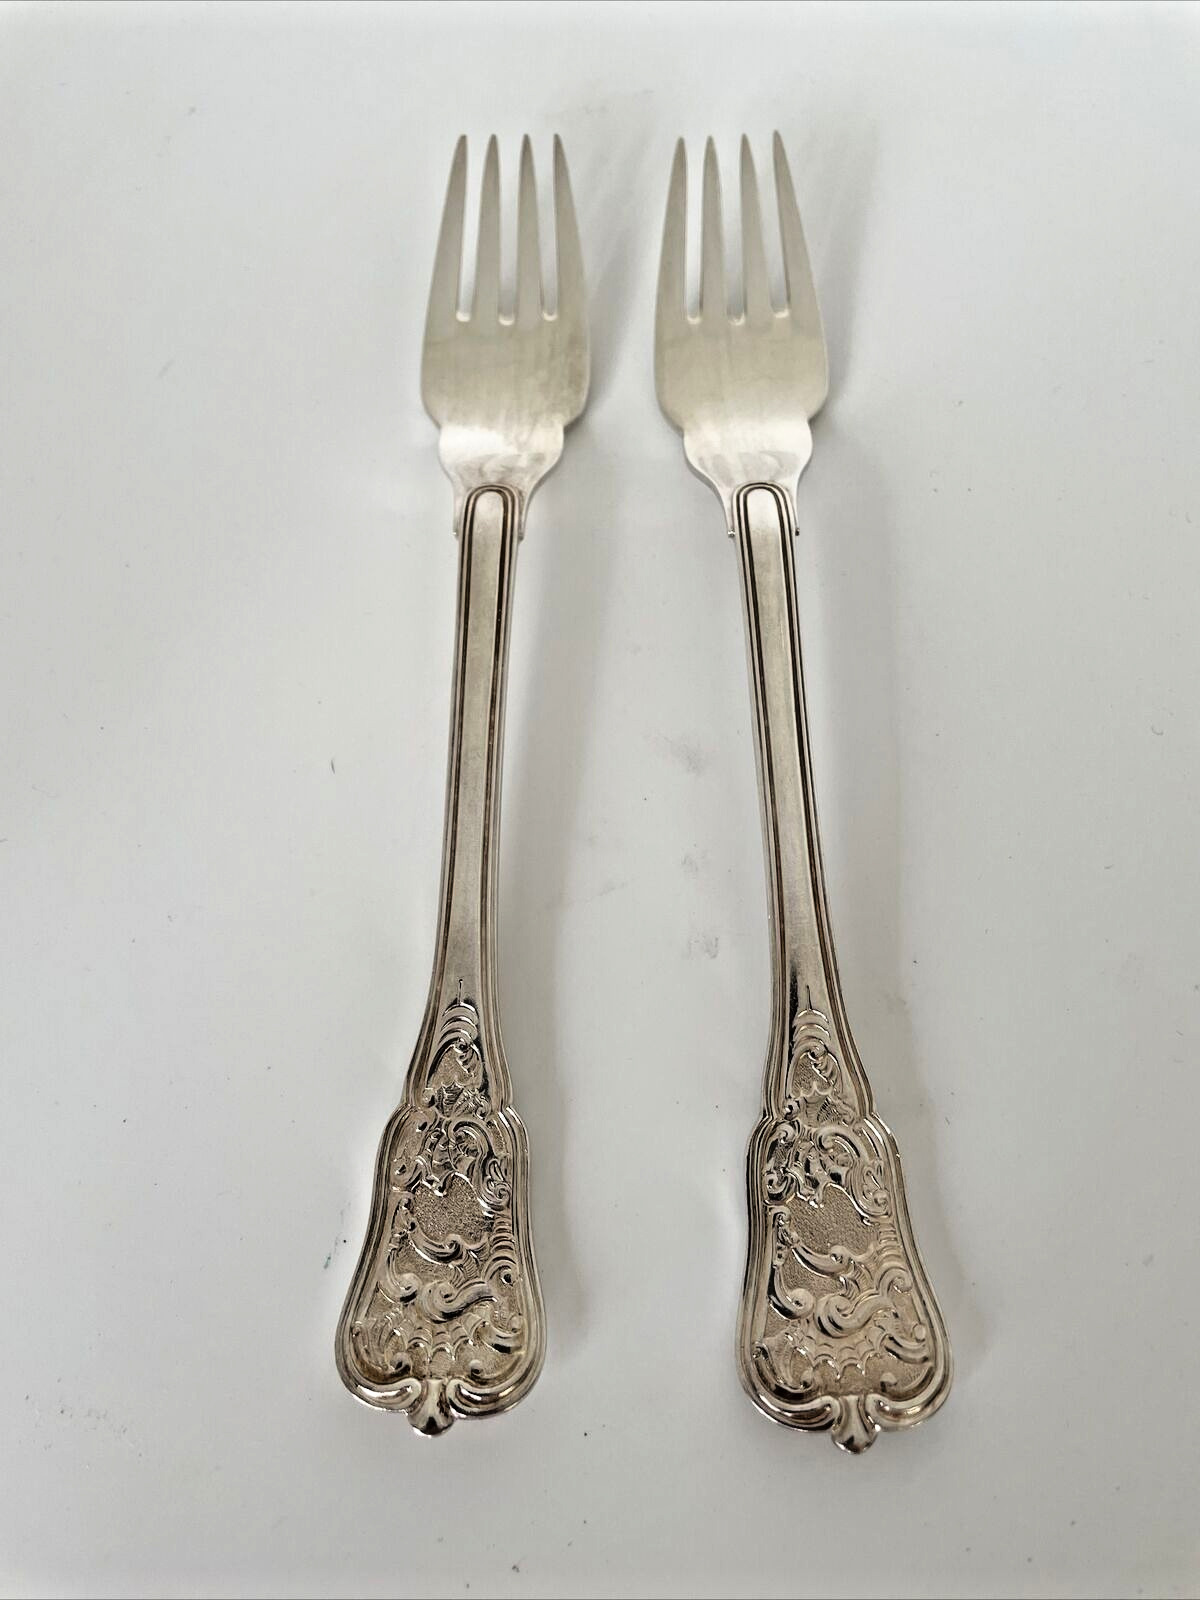 2 Georg Jensen Danish Rosenborg Silver Plate Forks